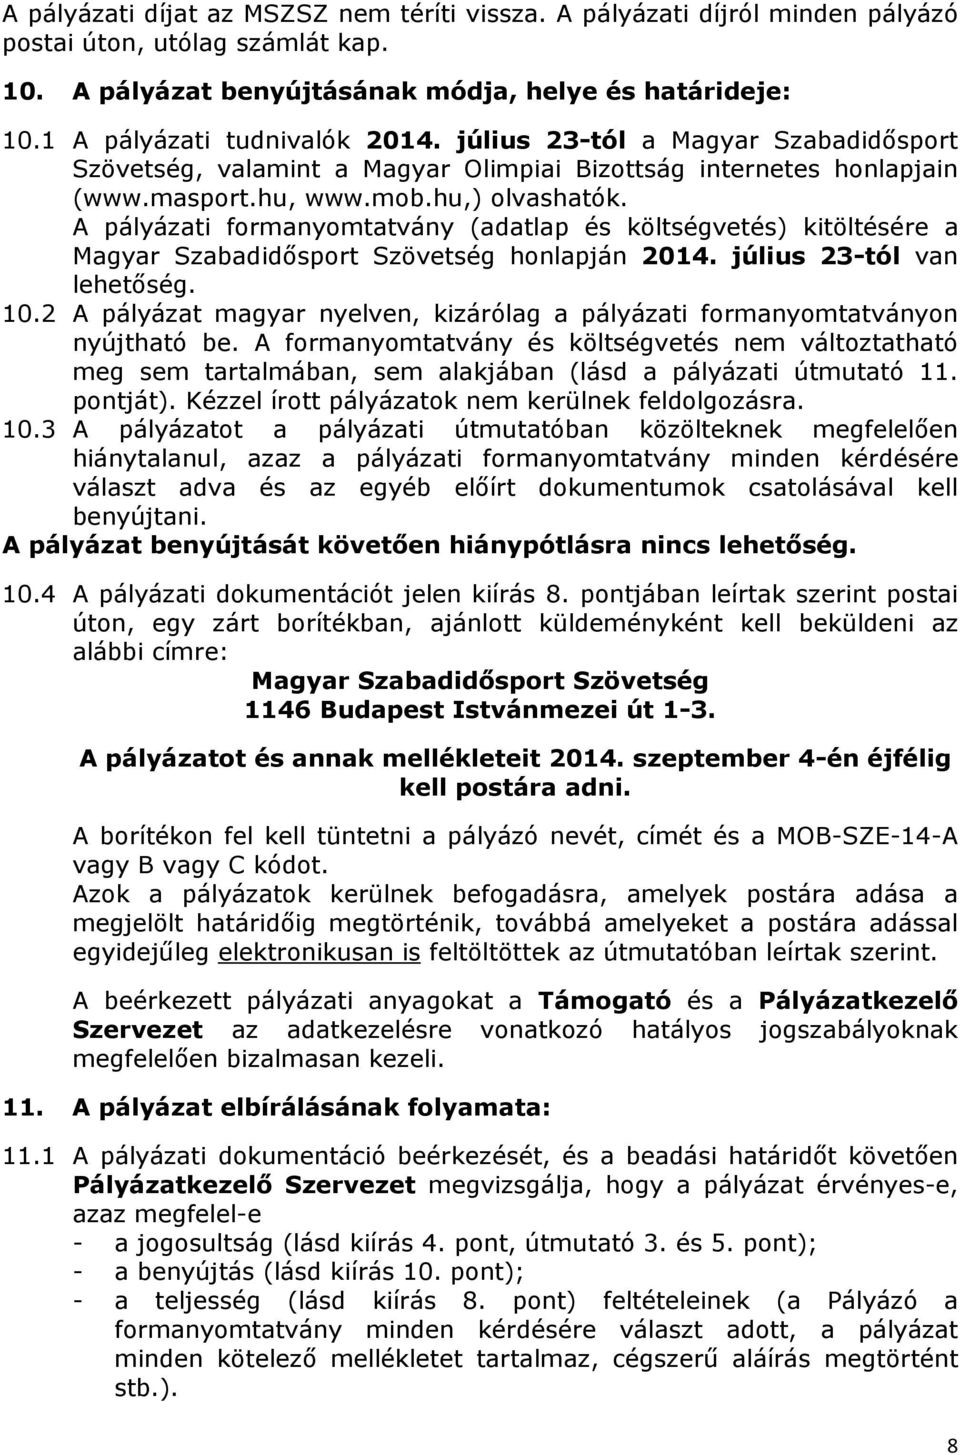 A pályázati formanyomtatvány (adatlap és költségvetés) kitöltésére a Magyar Szabadidősport Szövetség honlapján 2014. július 23-tól van lehetőség. 10.